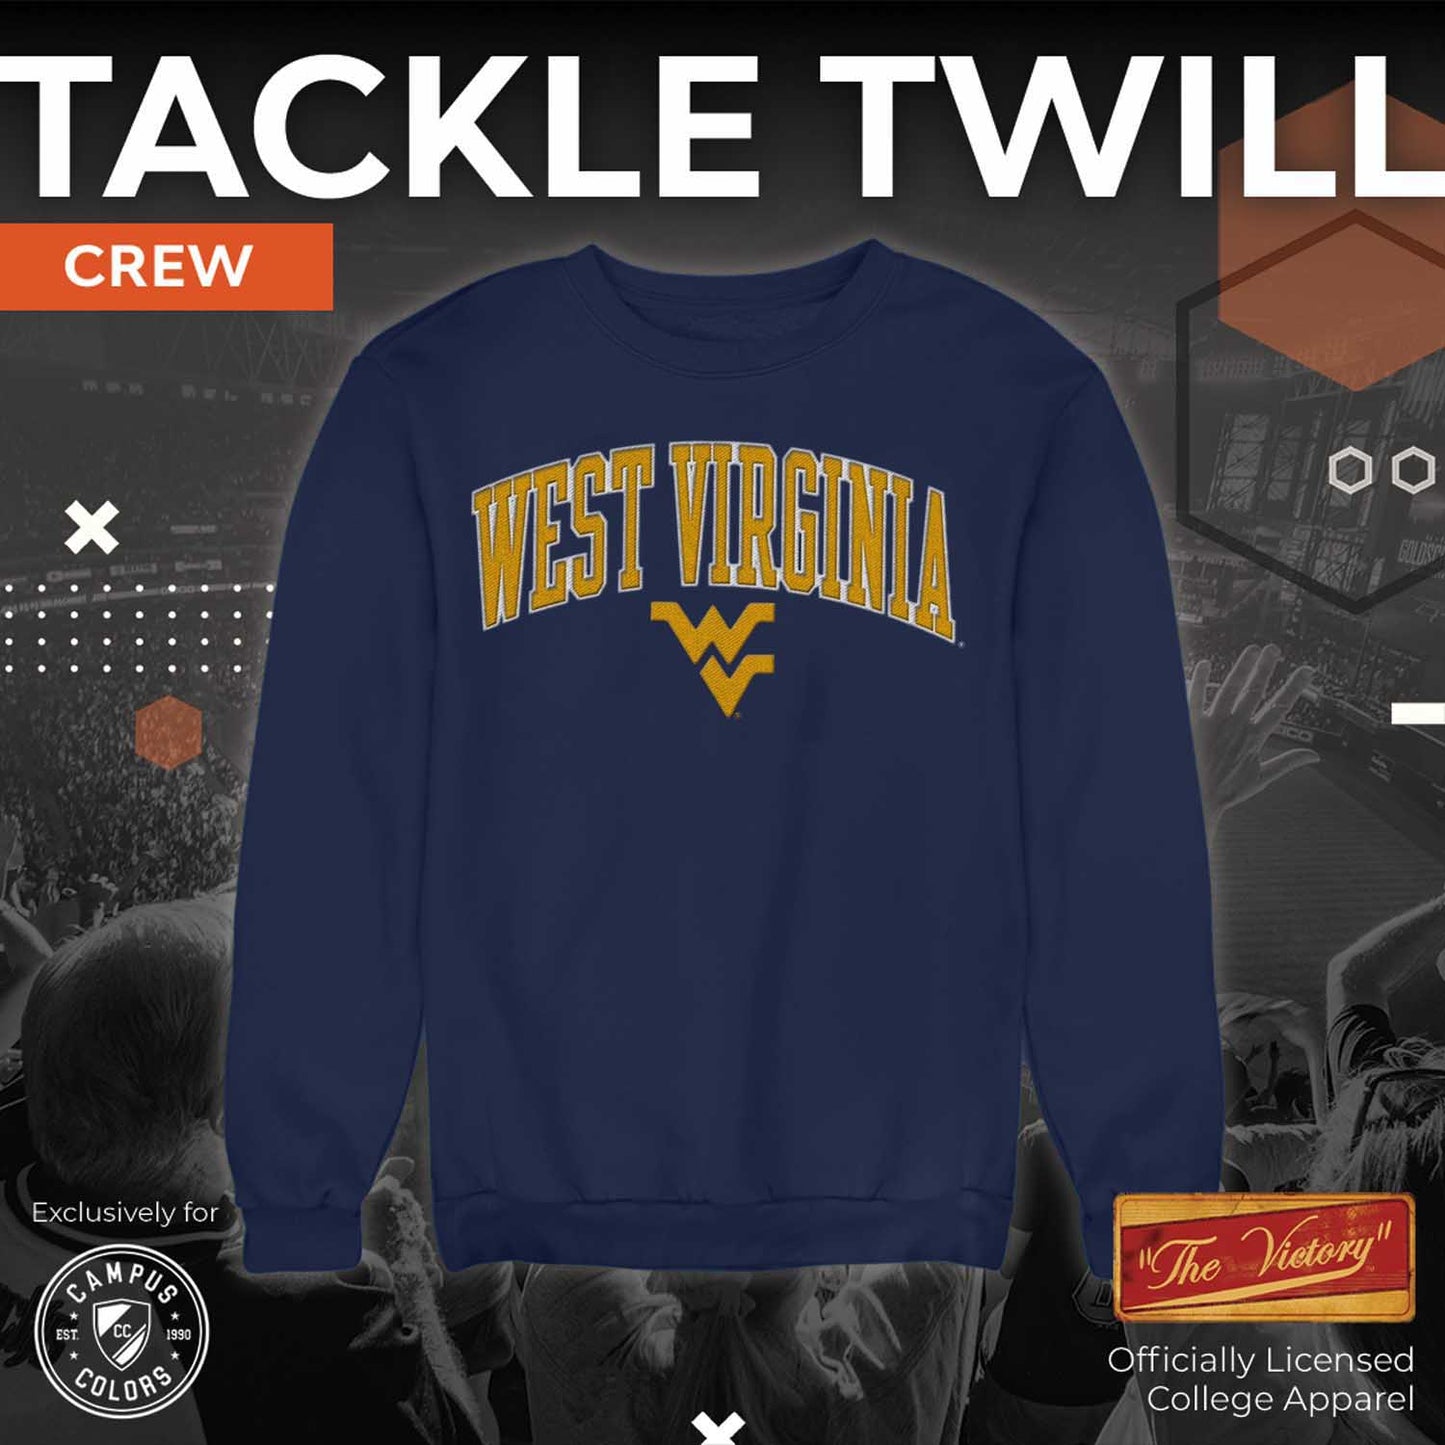 West Virginia Mountaineers NCAA Adult Tackle Twill Crewneck Sweatshirt - Navy